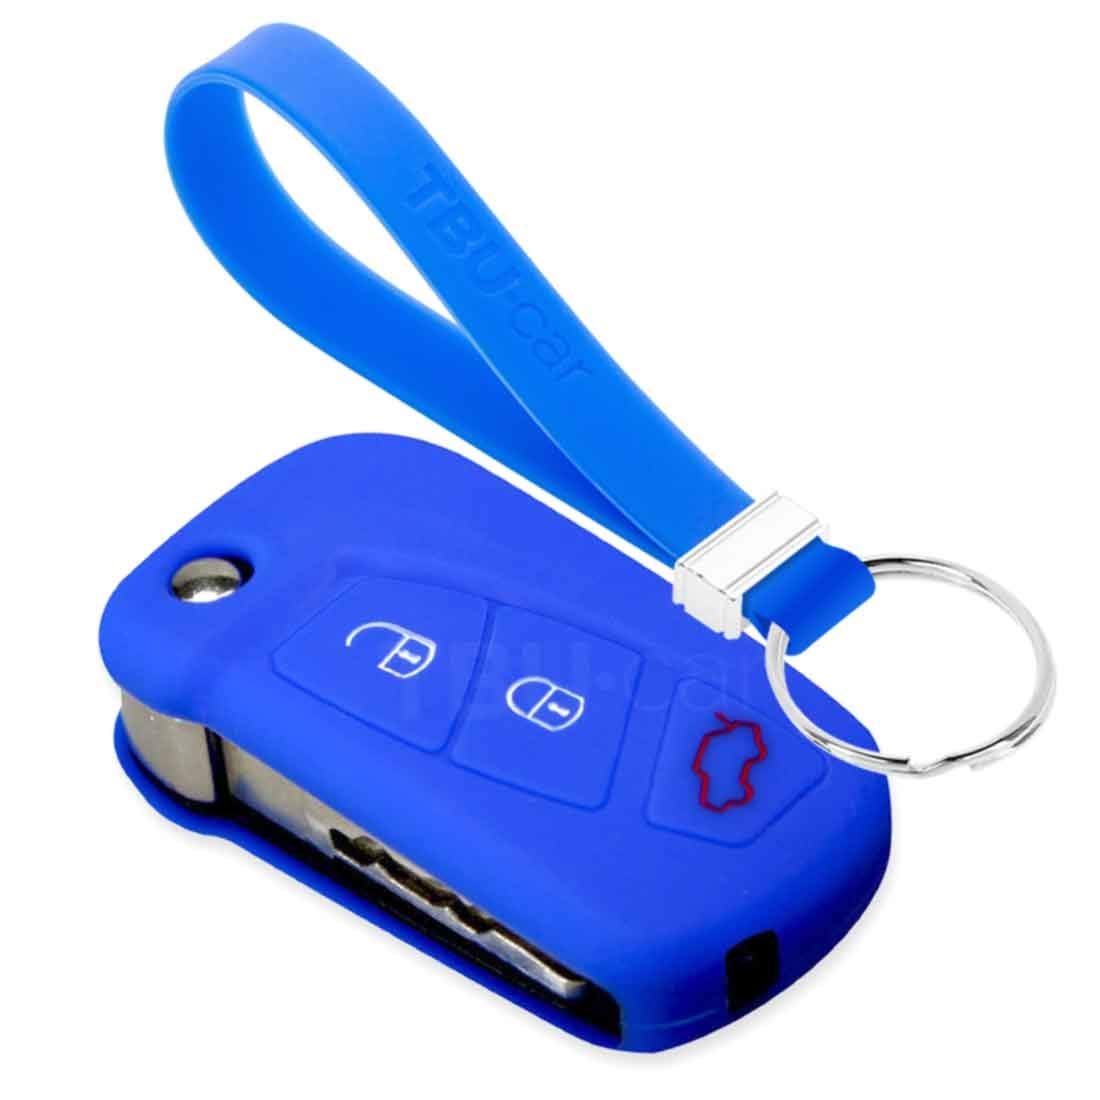 TBU car Autoschlüssel Hülle kompatibel mit Ford 3 Tasten (KA) - Schutzhülle aus Silikon - Auto Schlüsselhülle Cover in Blau von TBU car